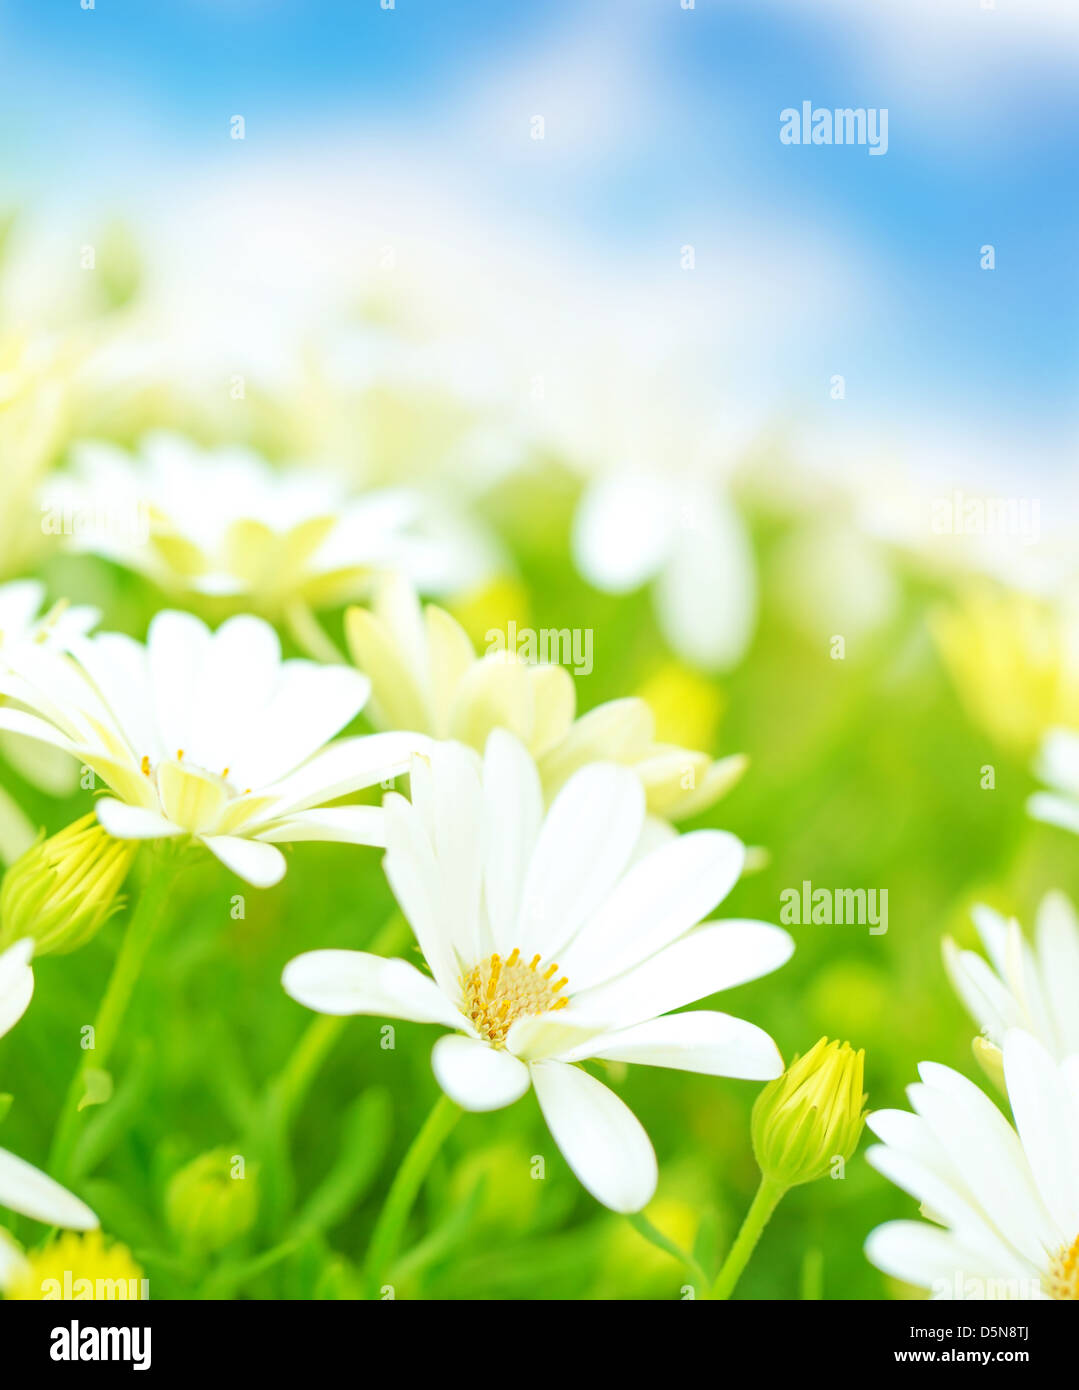 Frische weiße Gänseblümchen Blumen Wiese über blauer Himmel, Weichzeichner, Frühling Jahreszeit, floralen Bereich, schönen Natur Stockfoto